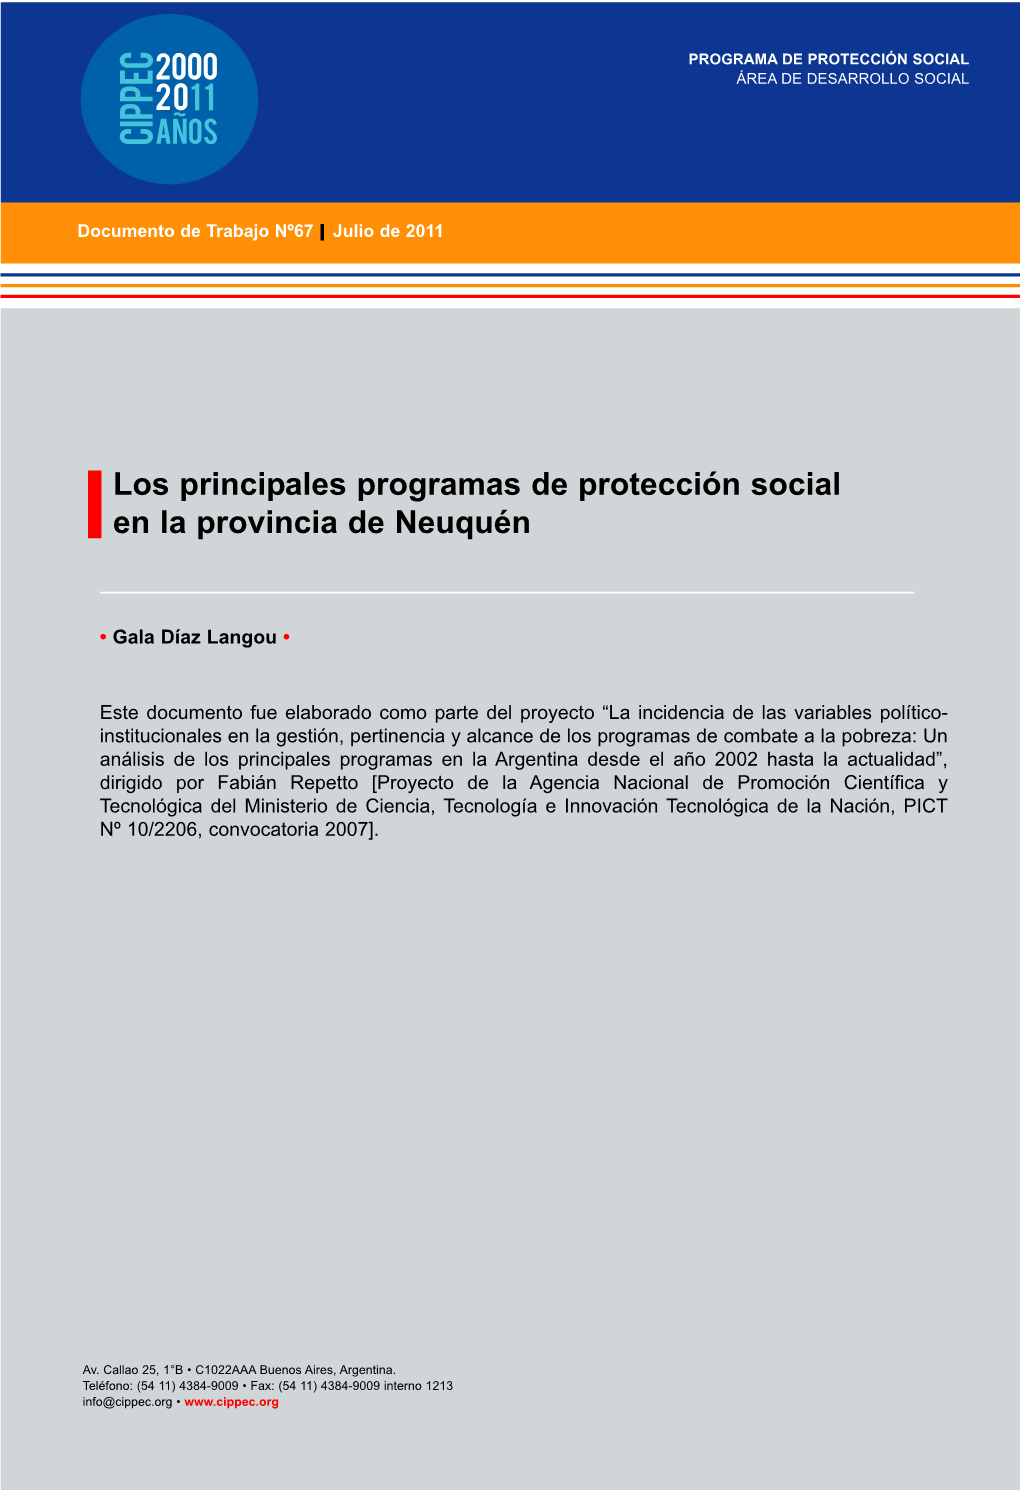 Los Principales Programas De Protección Social En La Provincia De Neuquén